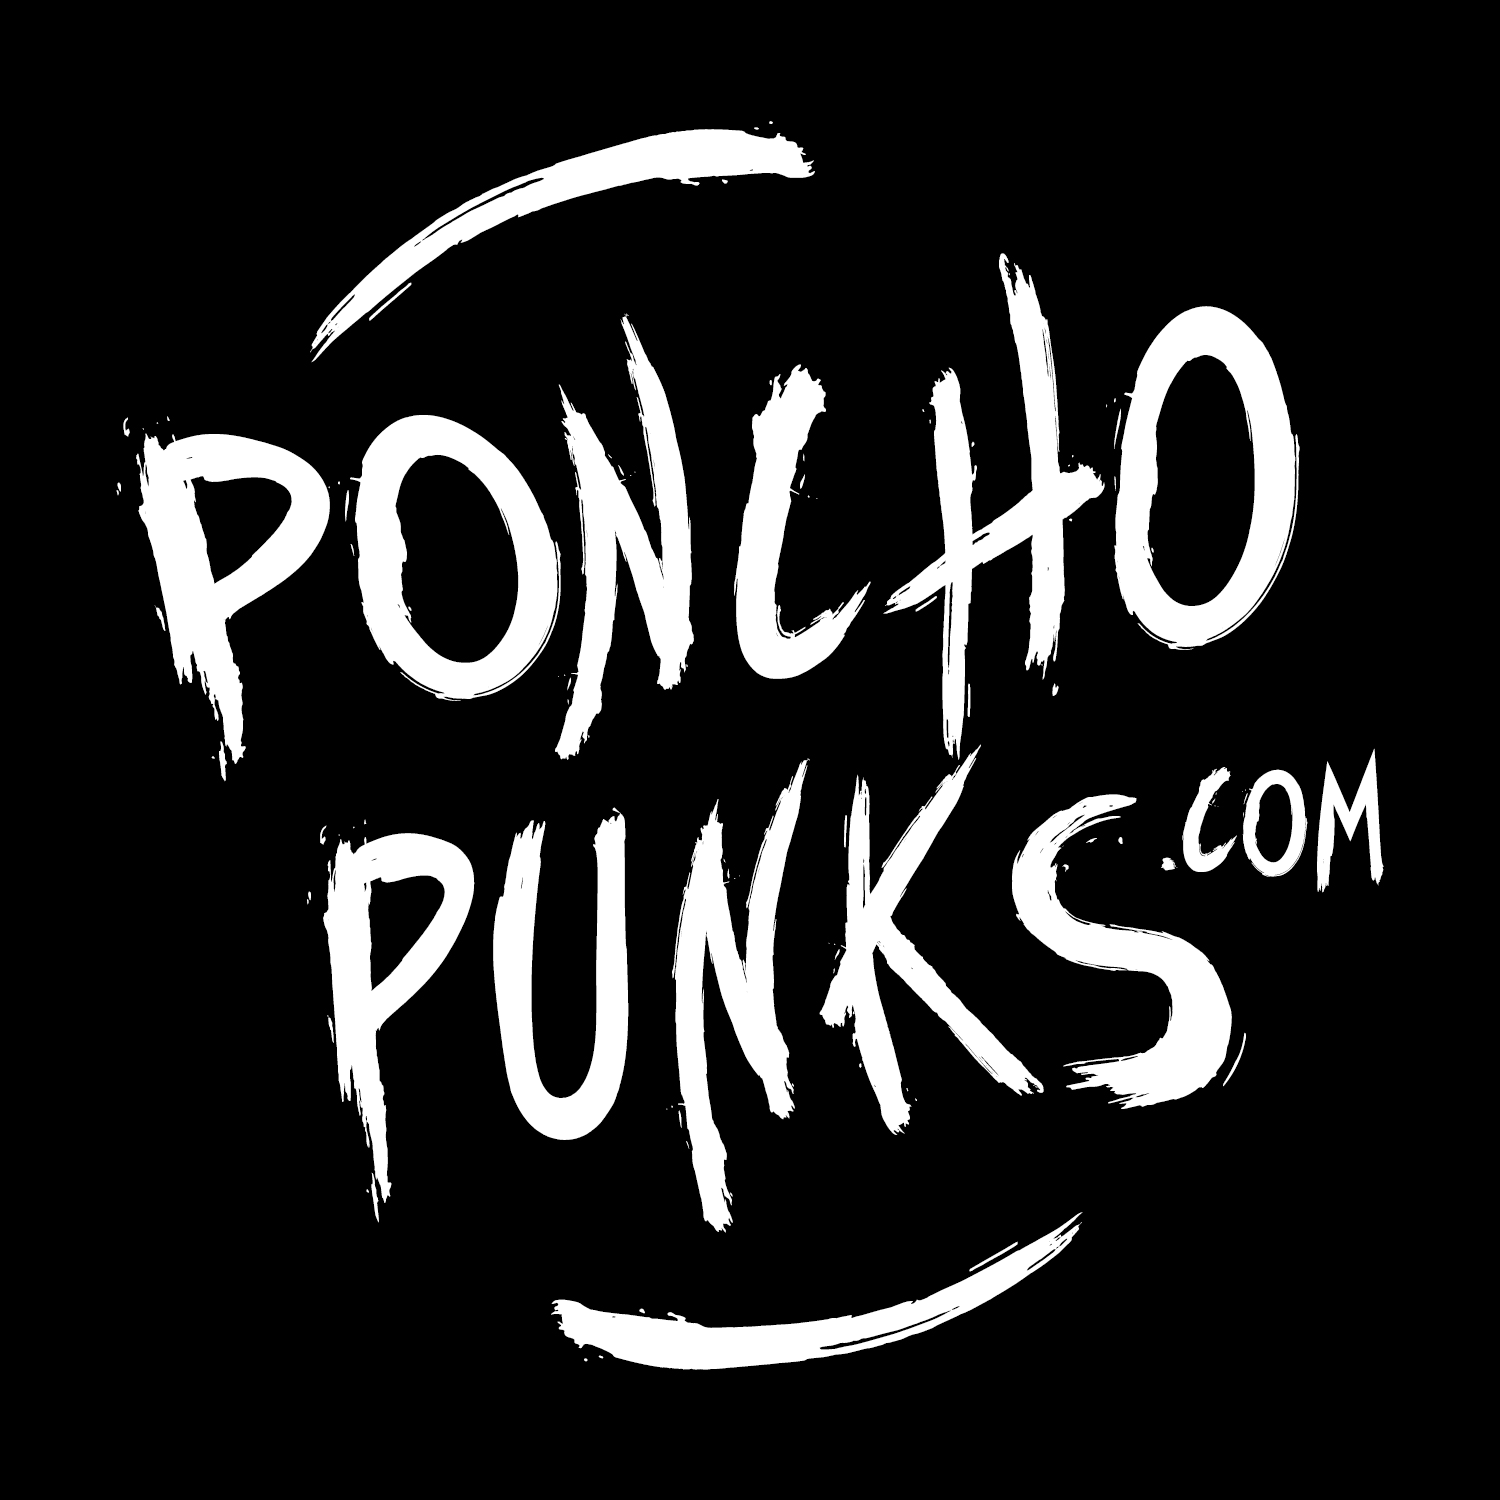 PonchoPunks